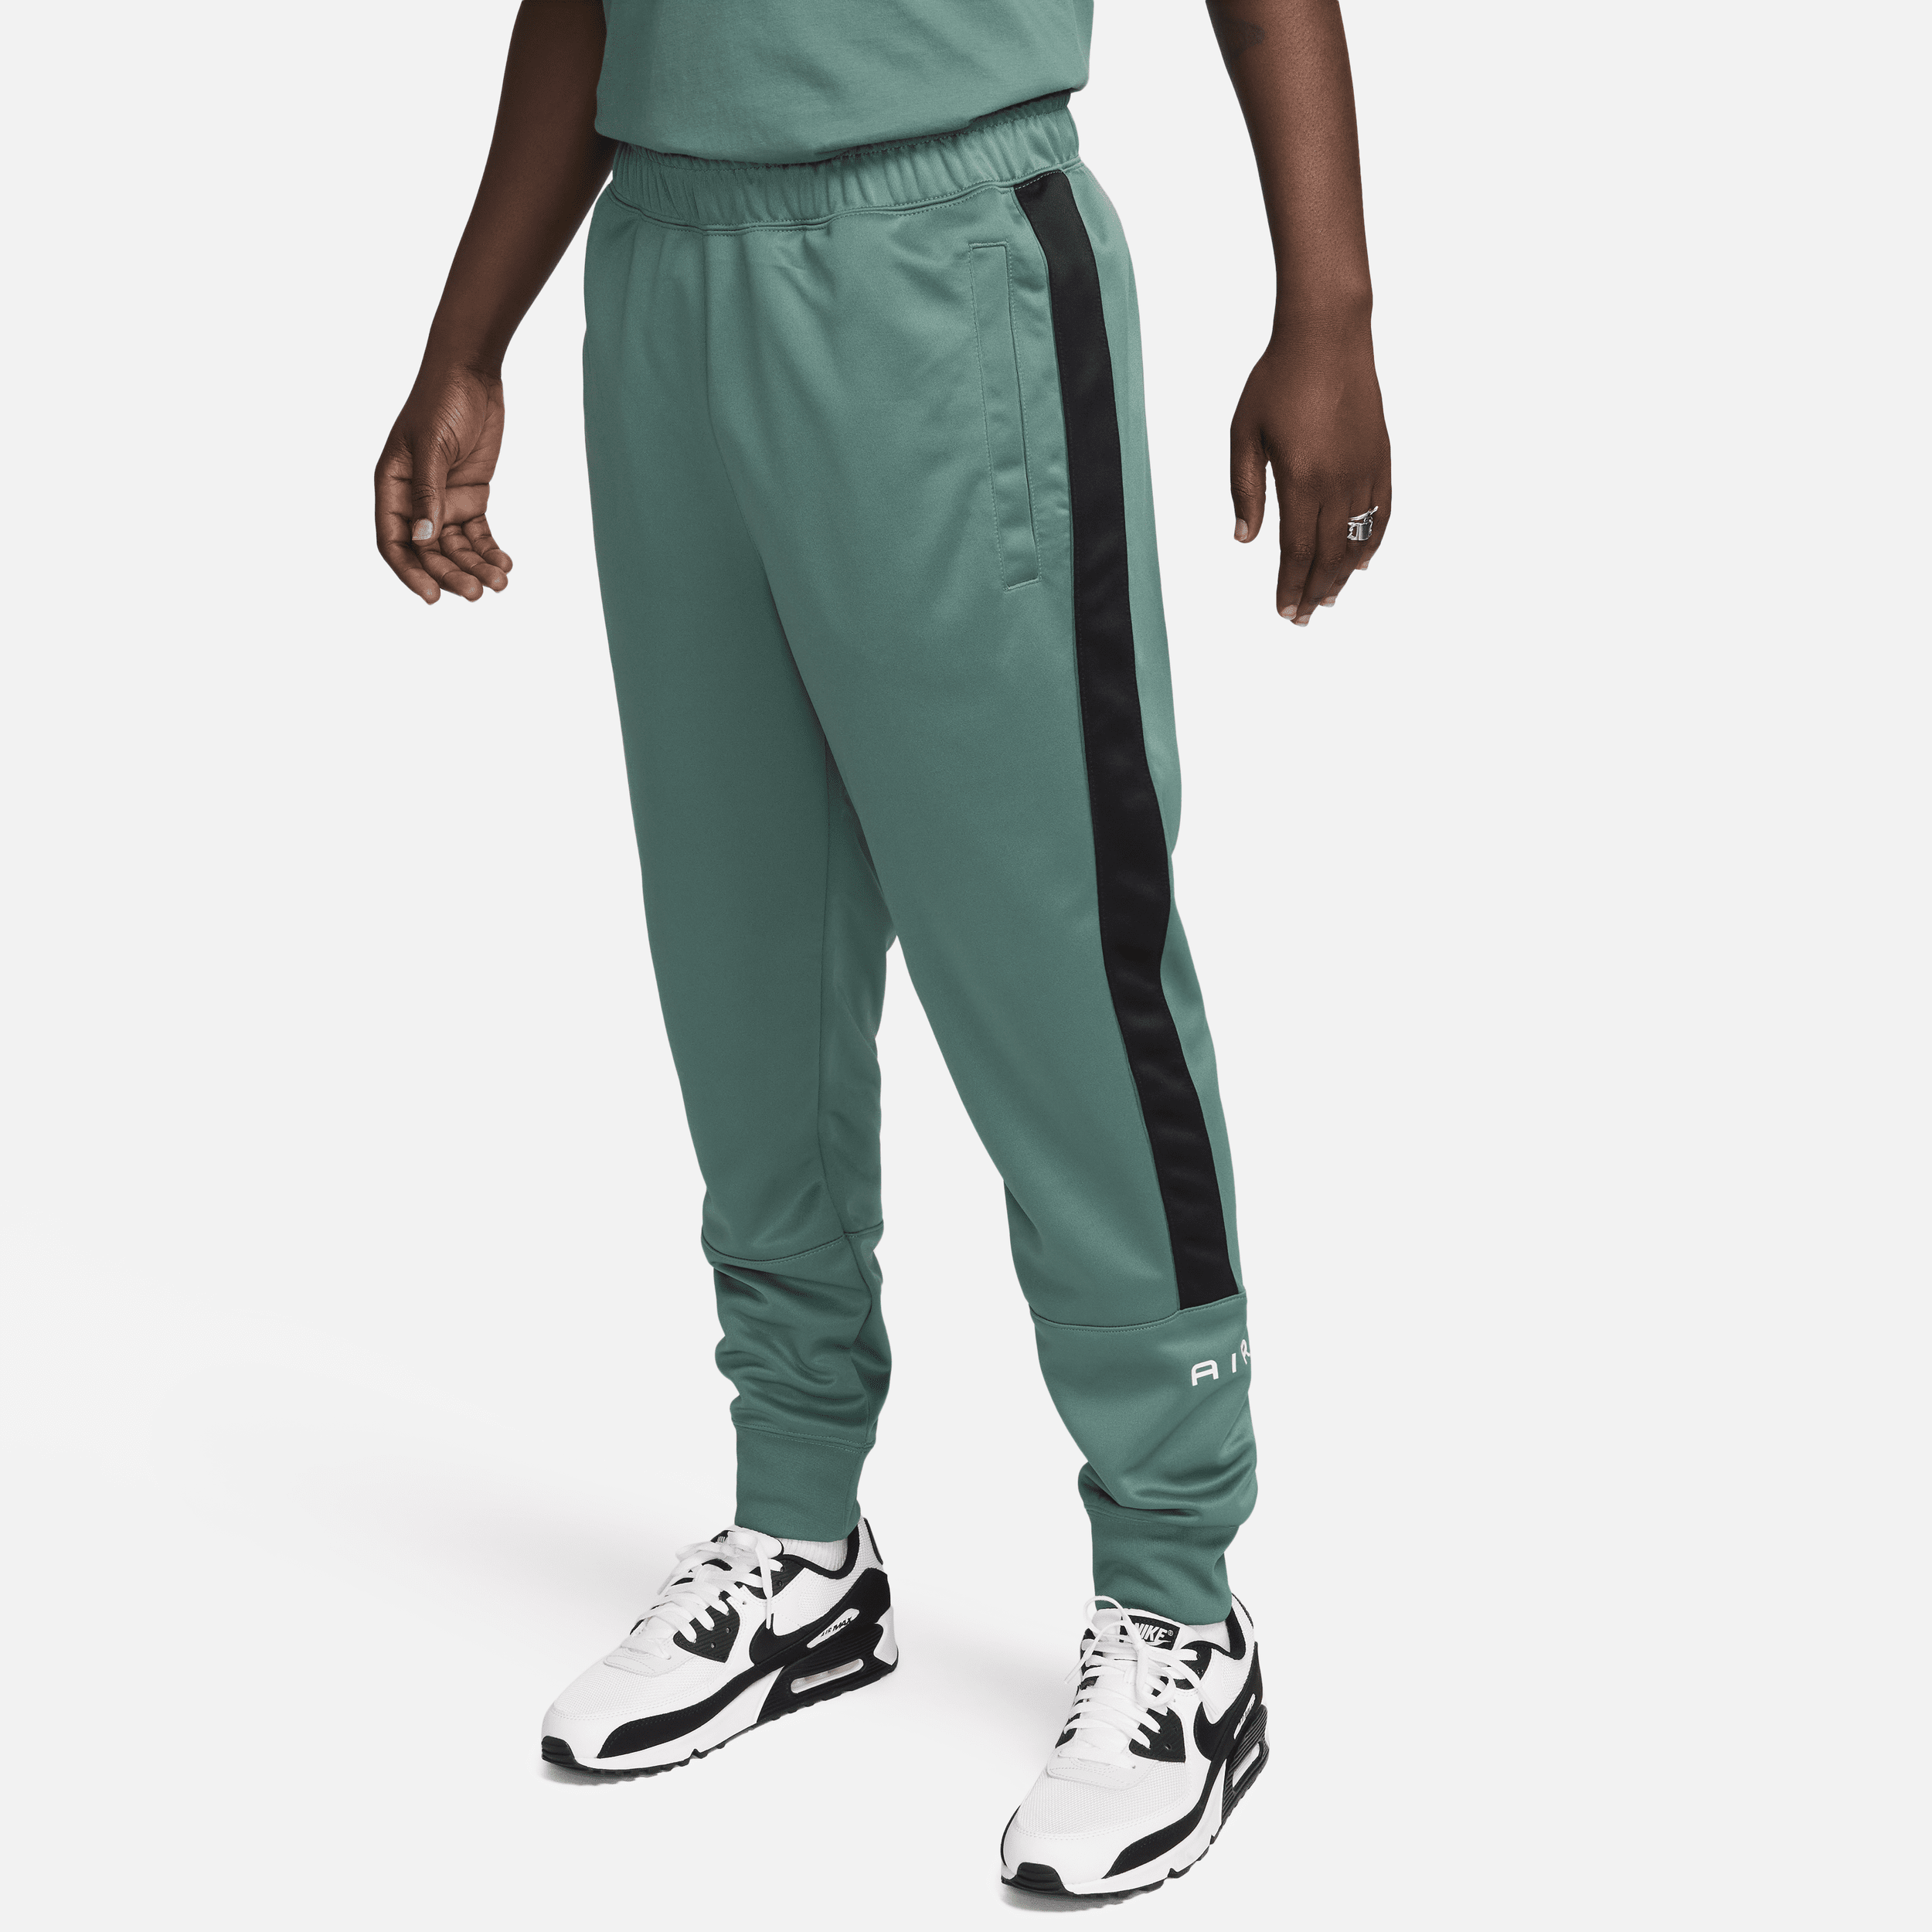 Nike Air Pantalón deportivo - Hombre - Verde